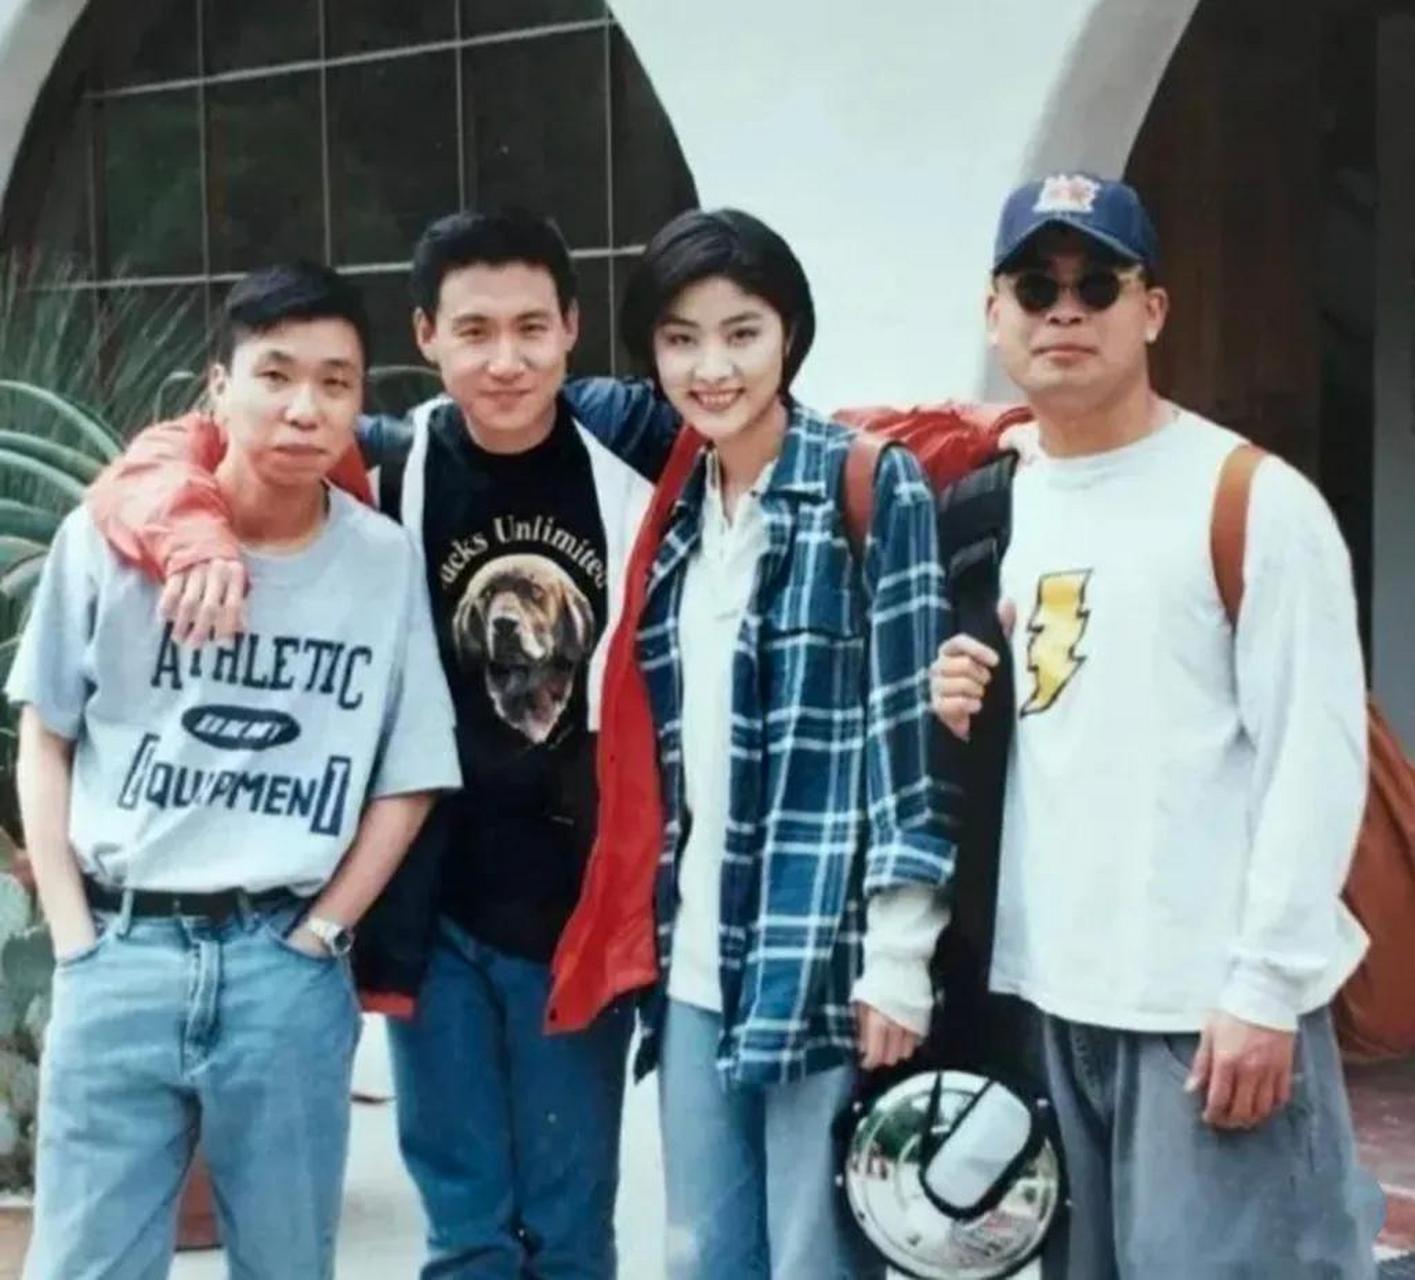 在上世纪90年代的合影中,我们可以看到张学友,陈慧琳和他们的两个朋友